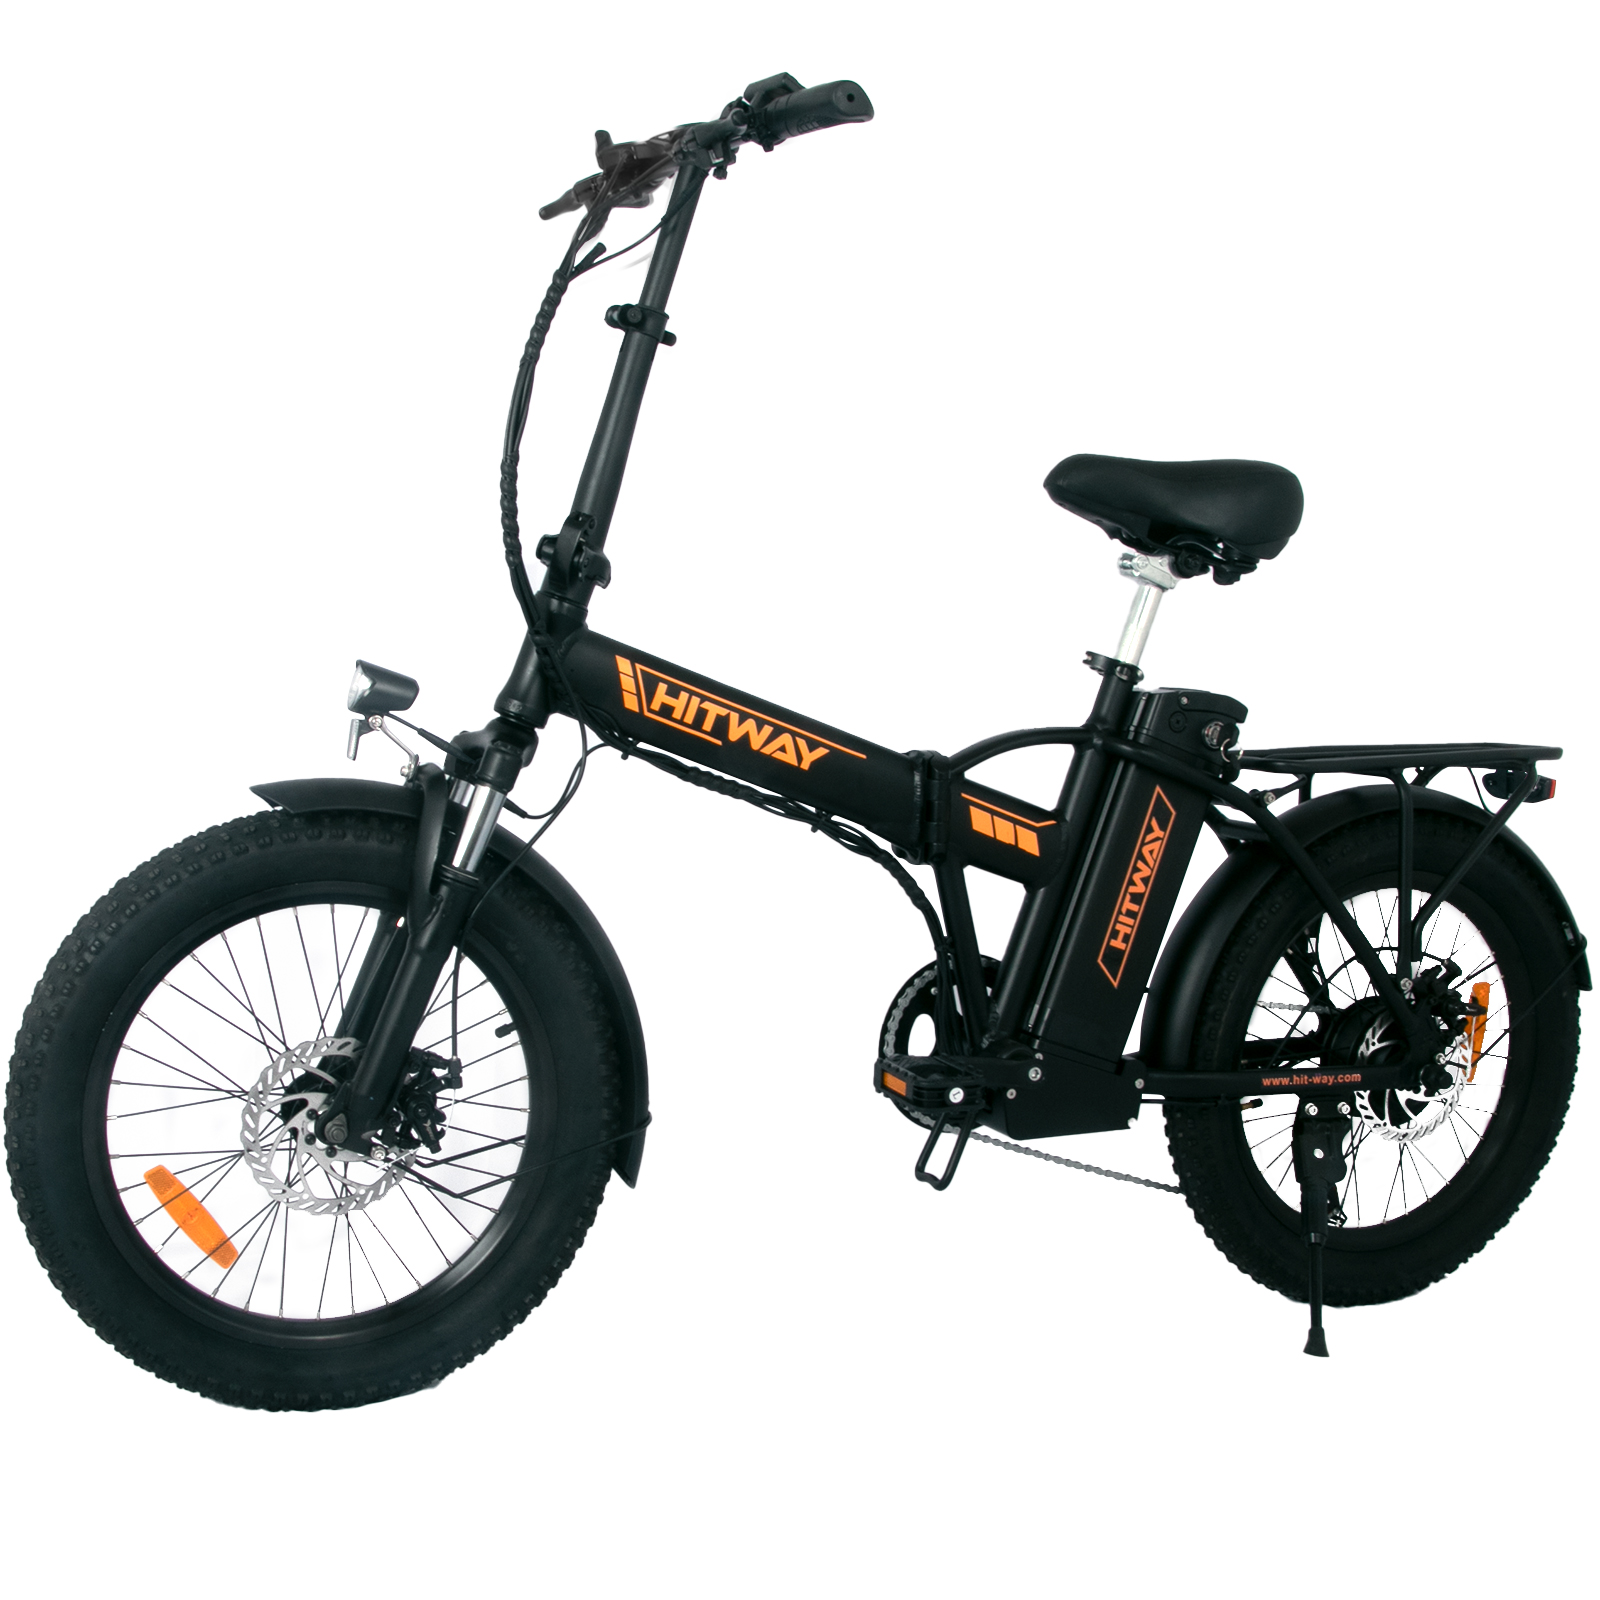 HITWAY BK11 Mountainbike (Laufradgröße: 20 Zoll, Unisex-Rad, Orange) 403,2, Schwarz und